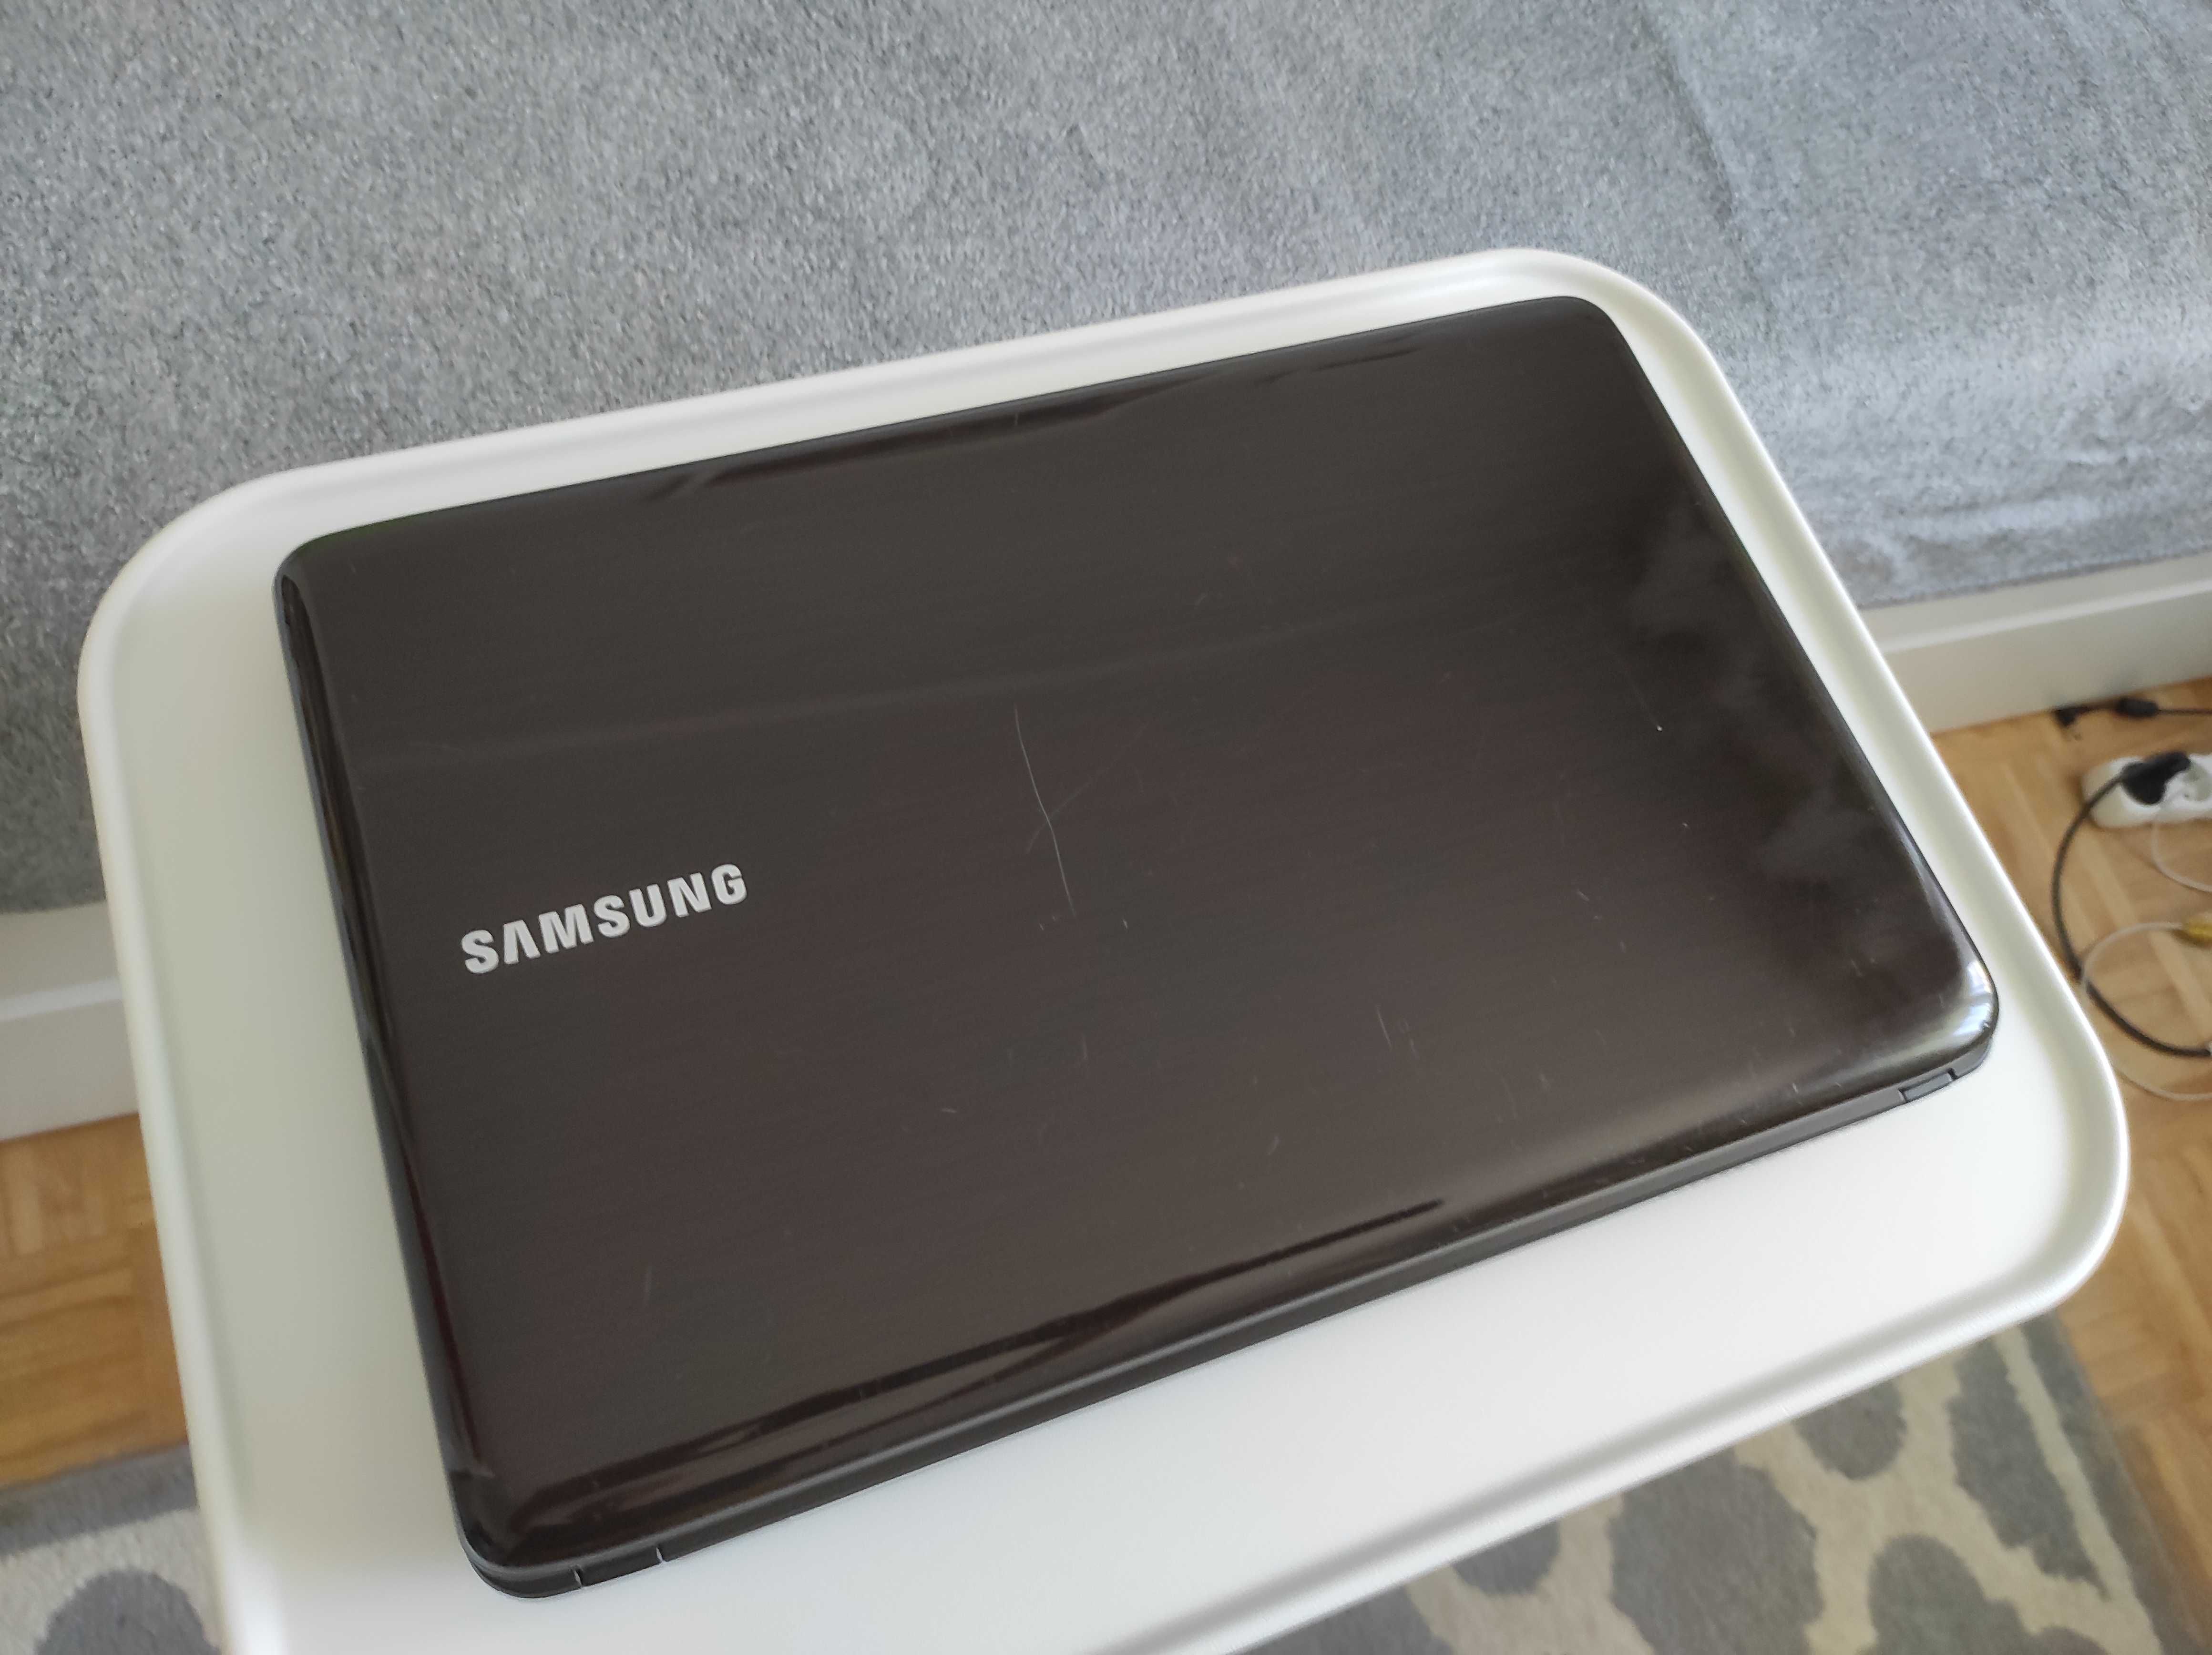 Laptop Samsung R540, Core i3 - 380M 2.53Ghz, 128GB SSD, 4GB RAM, WiFi